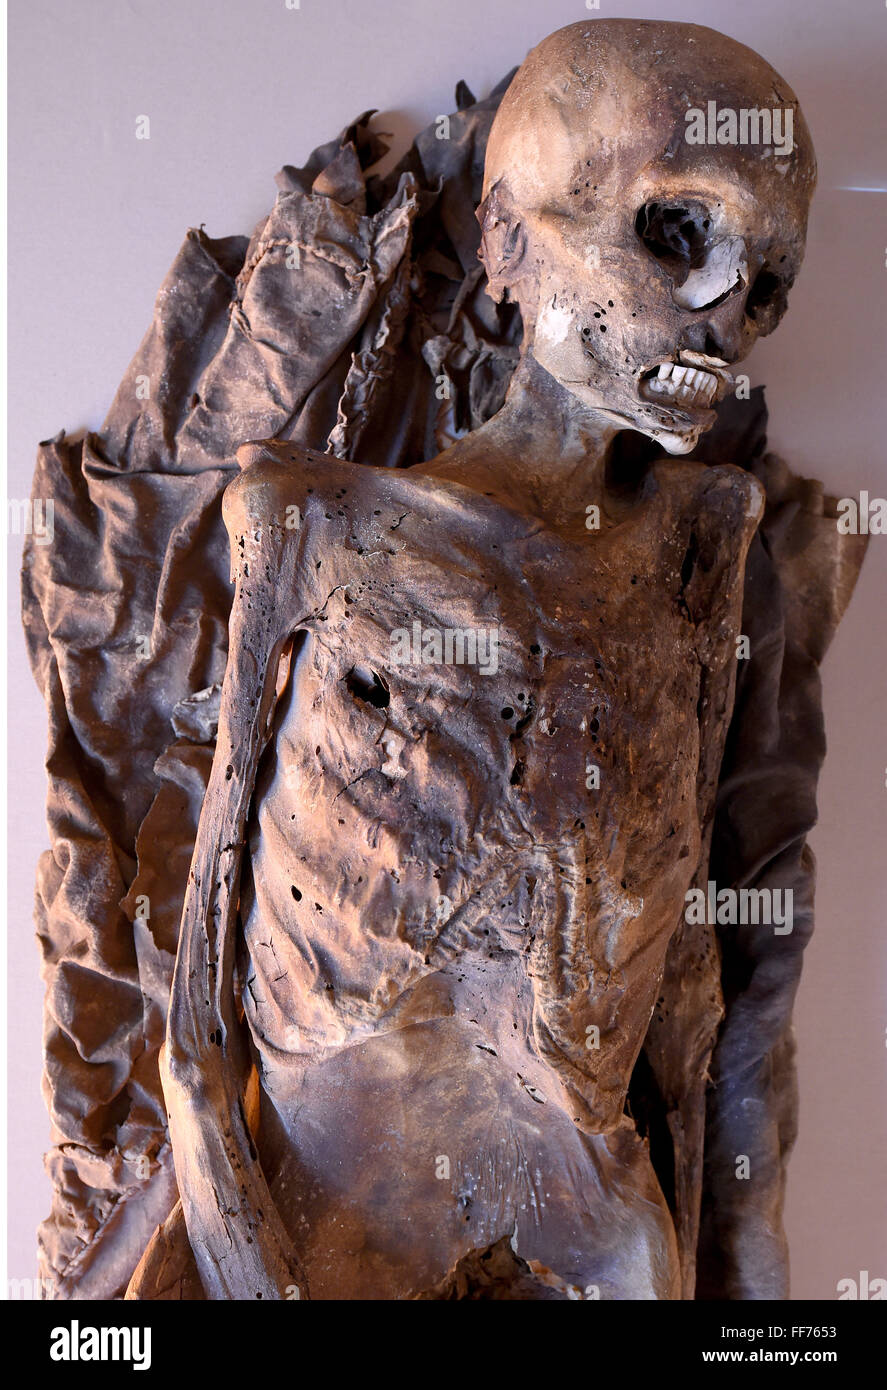 Une momie complète (sans doute entre 30 et 40 ans d'âge, la culture, l'Guanches fin du 13e au début du 14ème siècle, Tenerife, Canaries) est à l'affiche dans le cadre d'une exposition sur les momies du monde entier lors de la 'Roemer-und Pelizaeus-Museum', un musée consacré à l'antiquité égyptienne antique et l'art péruvien à Hildesheim, Allemagne, 11 février 2016. L'exposition 'Mumien der Welt' (momies du monde) en vedette 26 momies complète de différentes cultures autour du monde. L'exposition est présentée du 13 au 28 février 2016 Febvruary. Photo : Holger Hollemann/dpa Banque D'Images